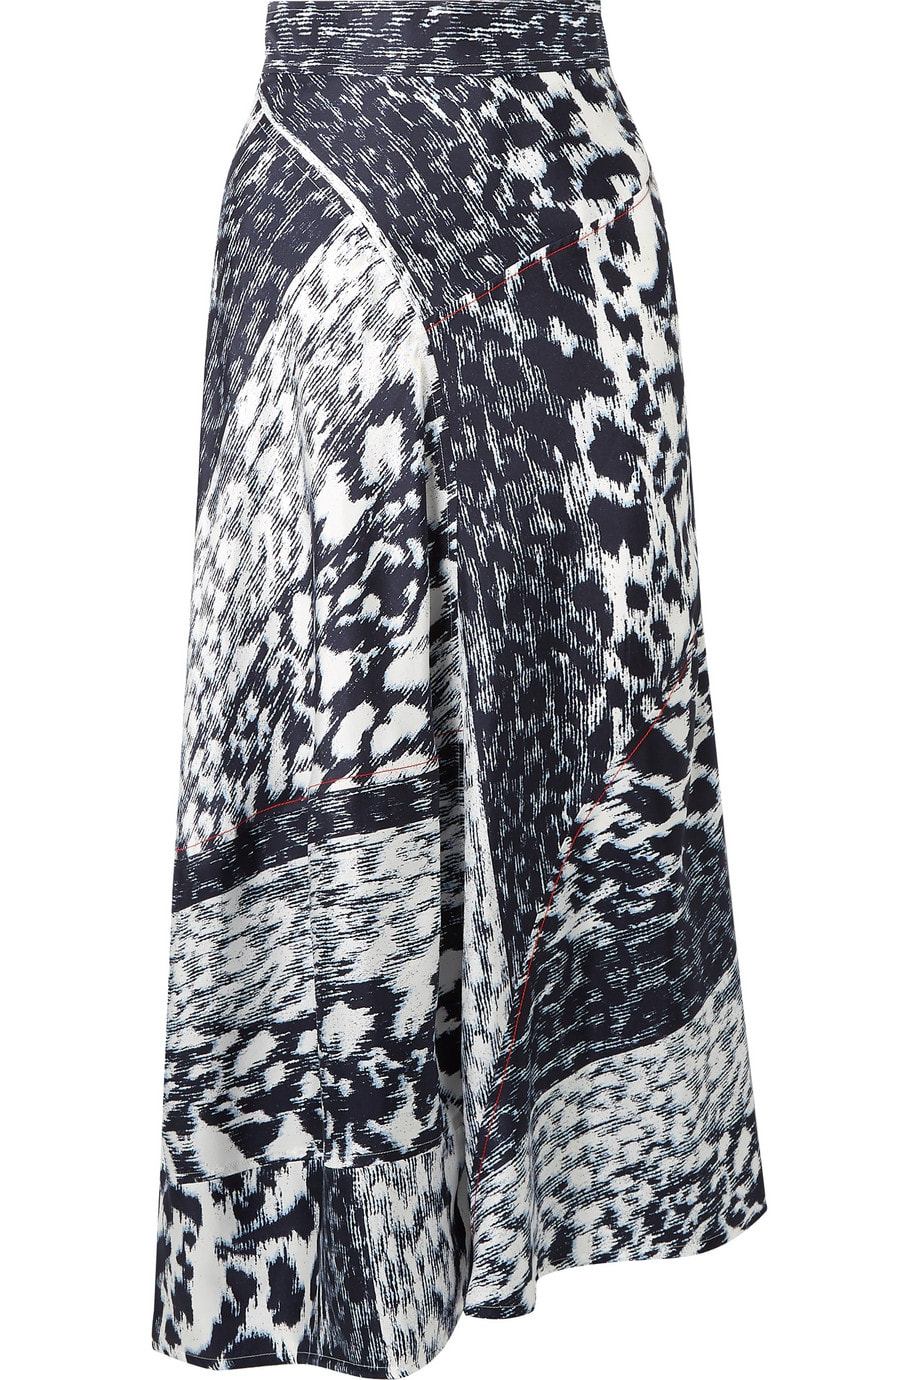 Victoria Beckham leopard print silk midi skirt